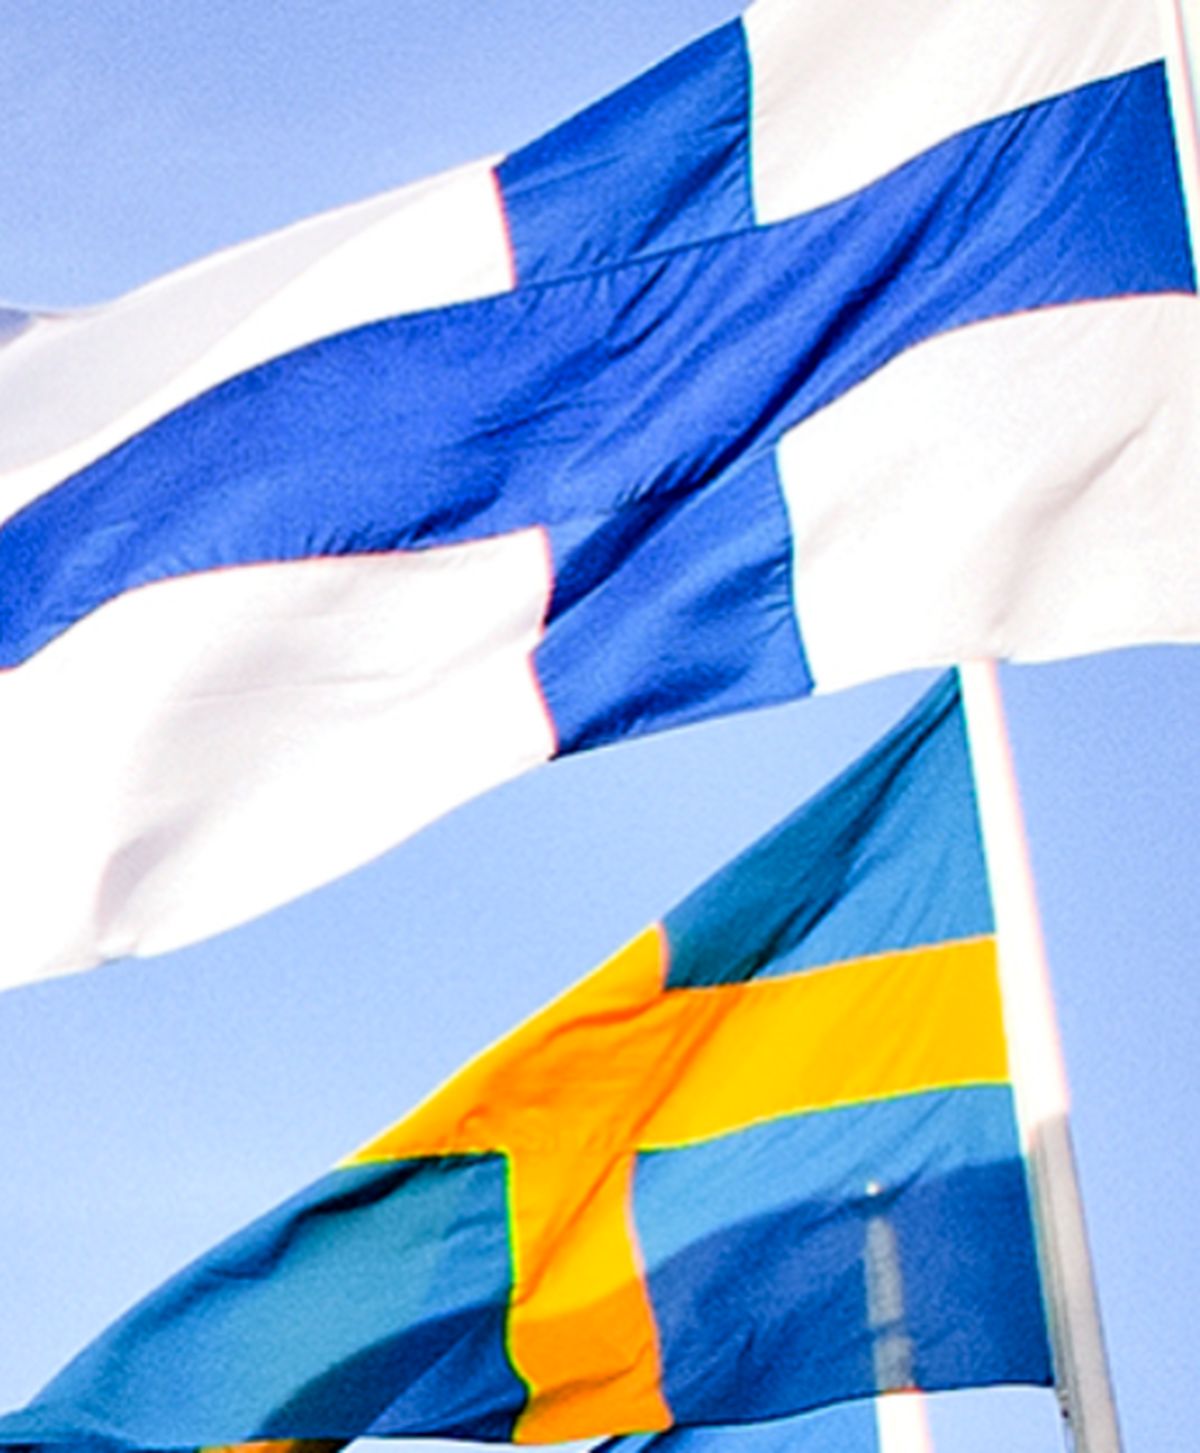 روسيه، چگونه سوئد و فنلاند را به ناتو نزديک كرد؟